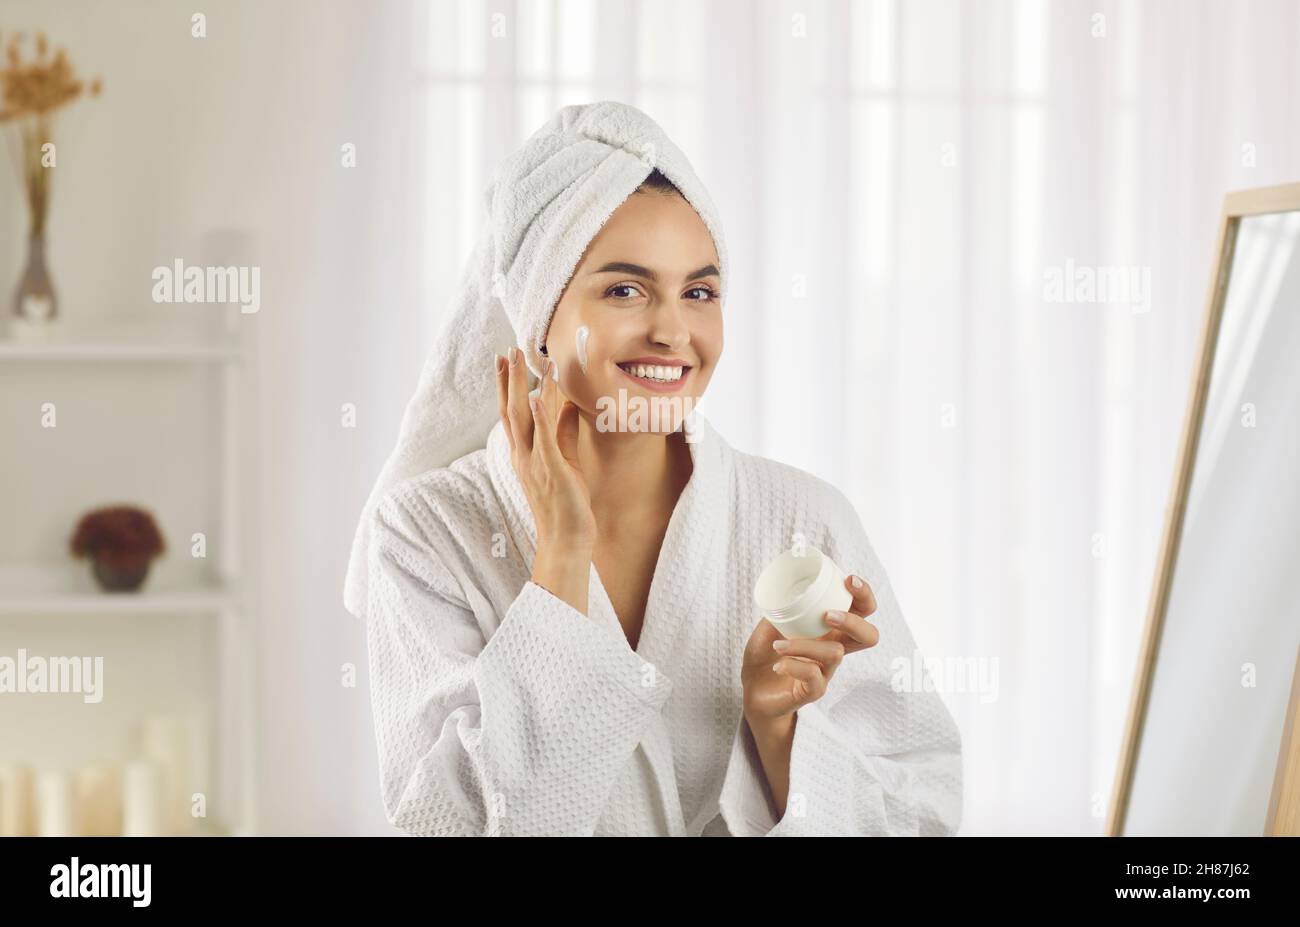 Fröhliche junge Frau mit einem Handtuch auf dem Kopf lächelnd, während sie Anti-Falten-Creme auf ihr Gesicht auftragen Stockfoto